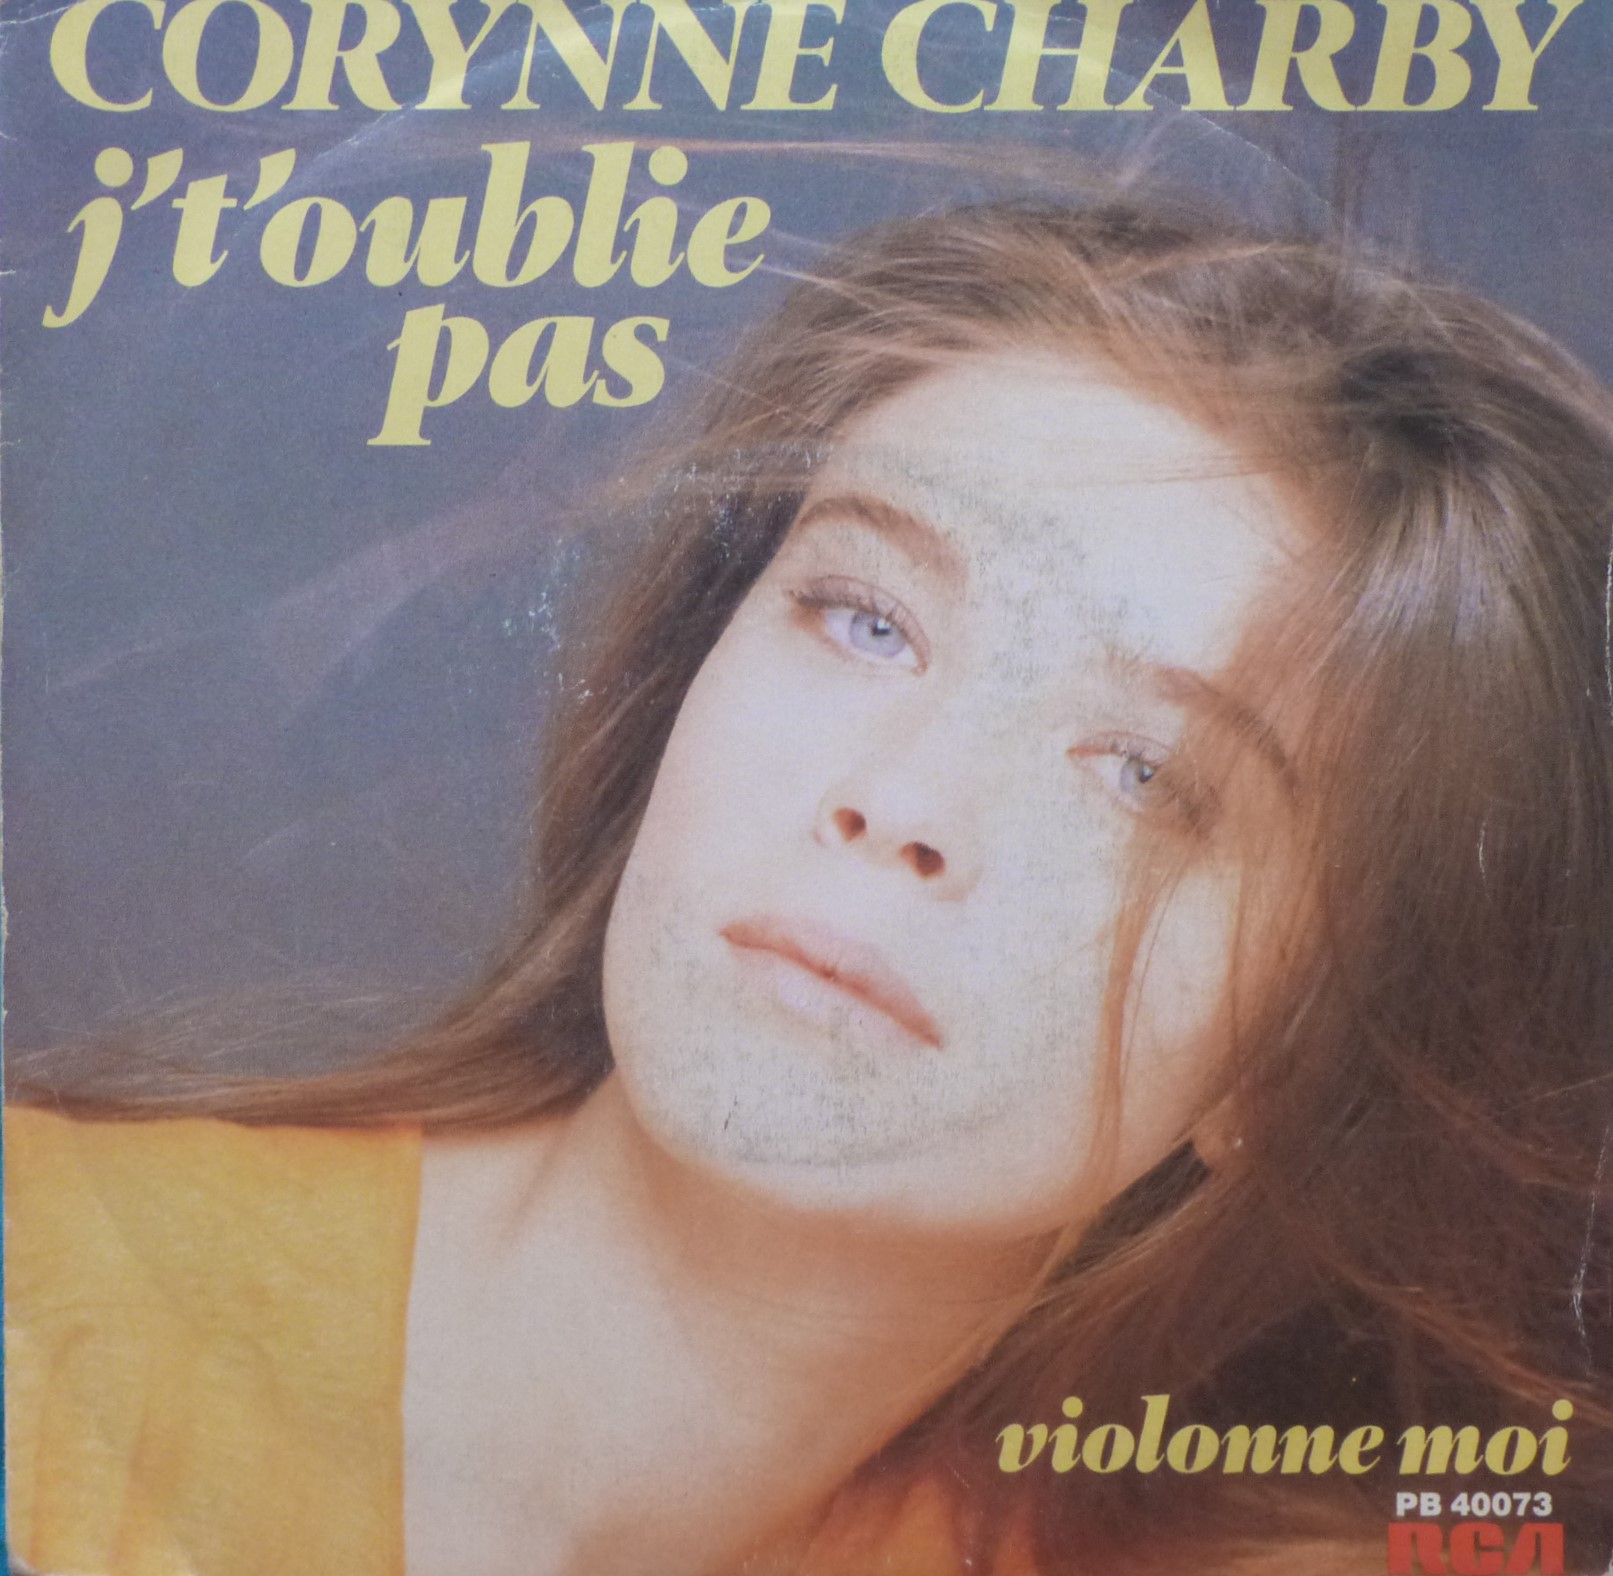 Corynne Charby